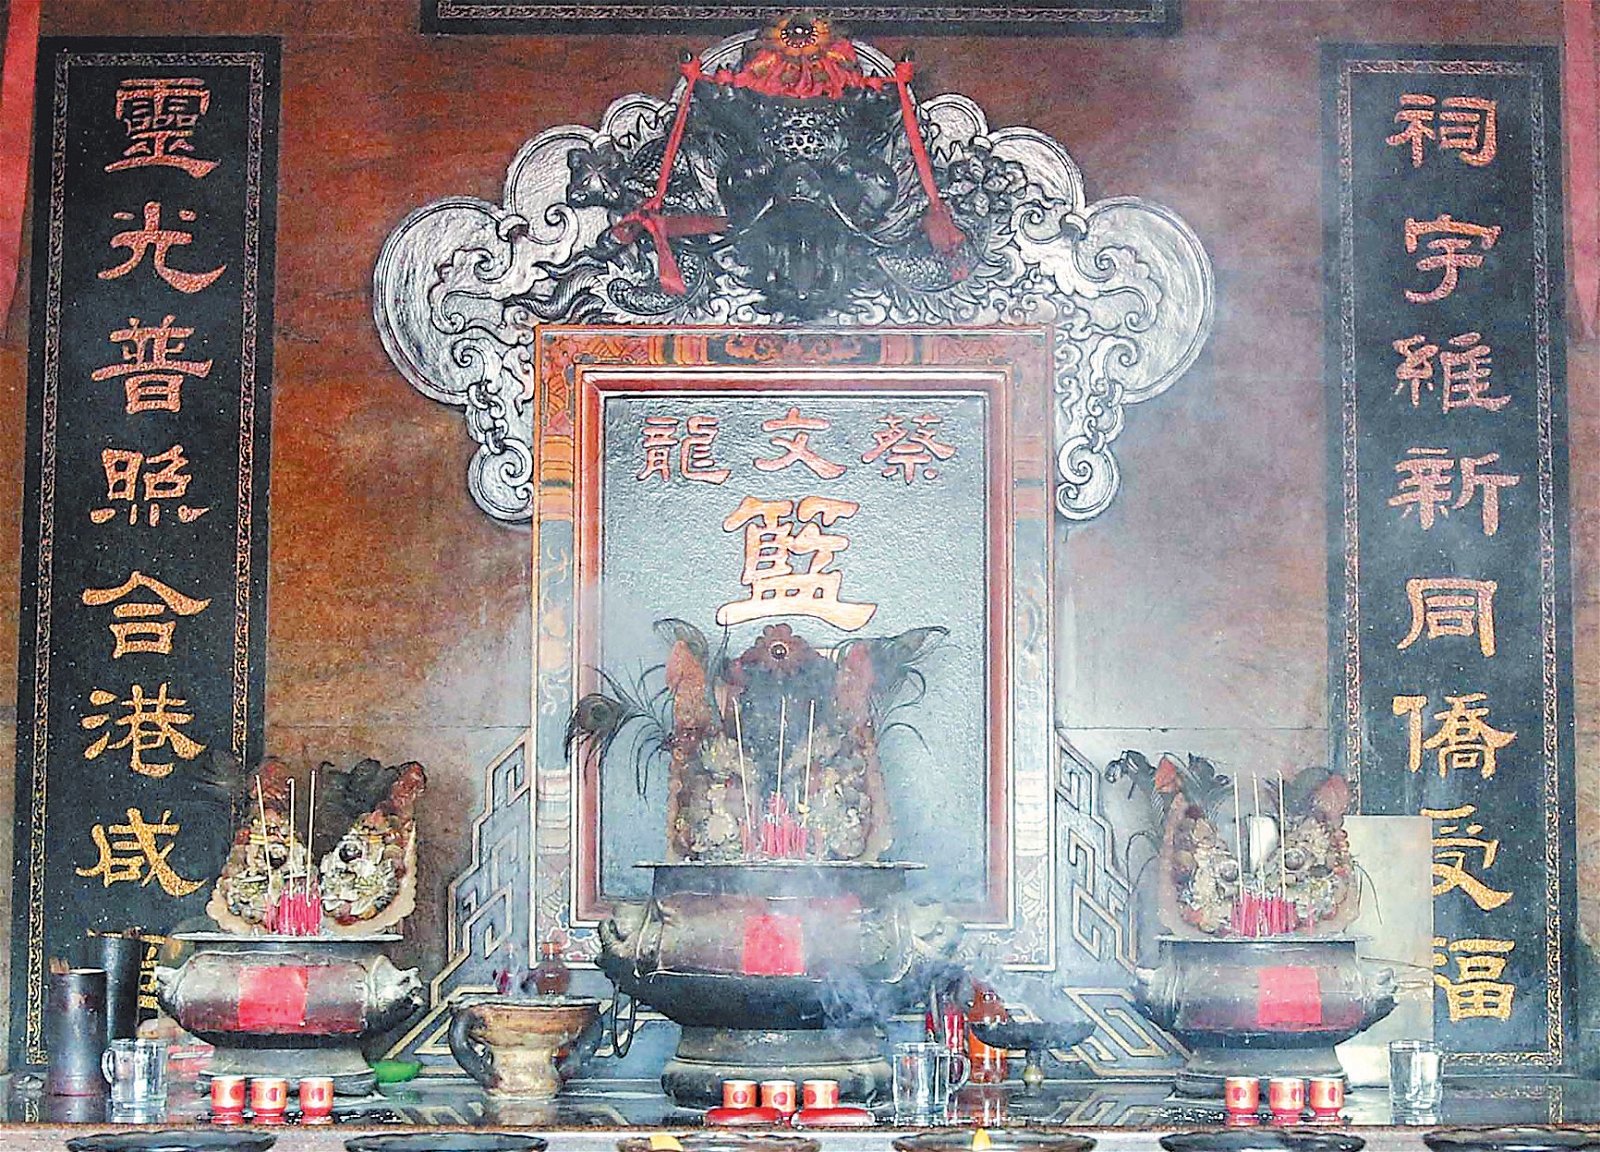 蔡文龙拿督公庙庙内供奉3个香炉，中间为华裔拿督公香炉，左右边分别是马来拿督公和印度拿督公的香炉。